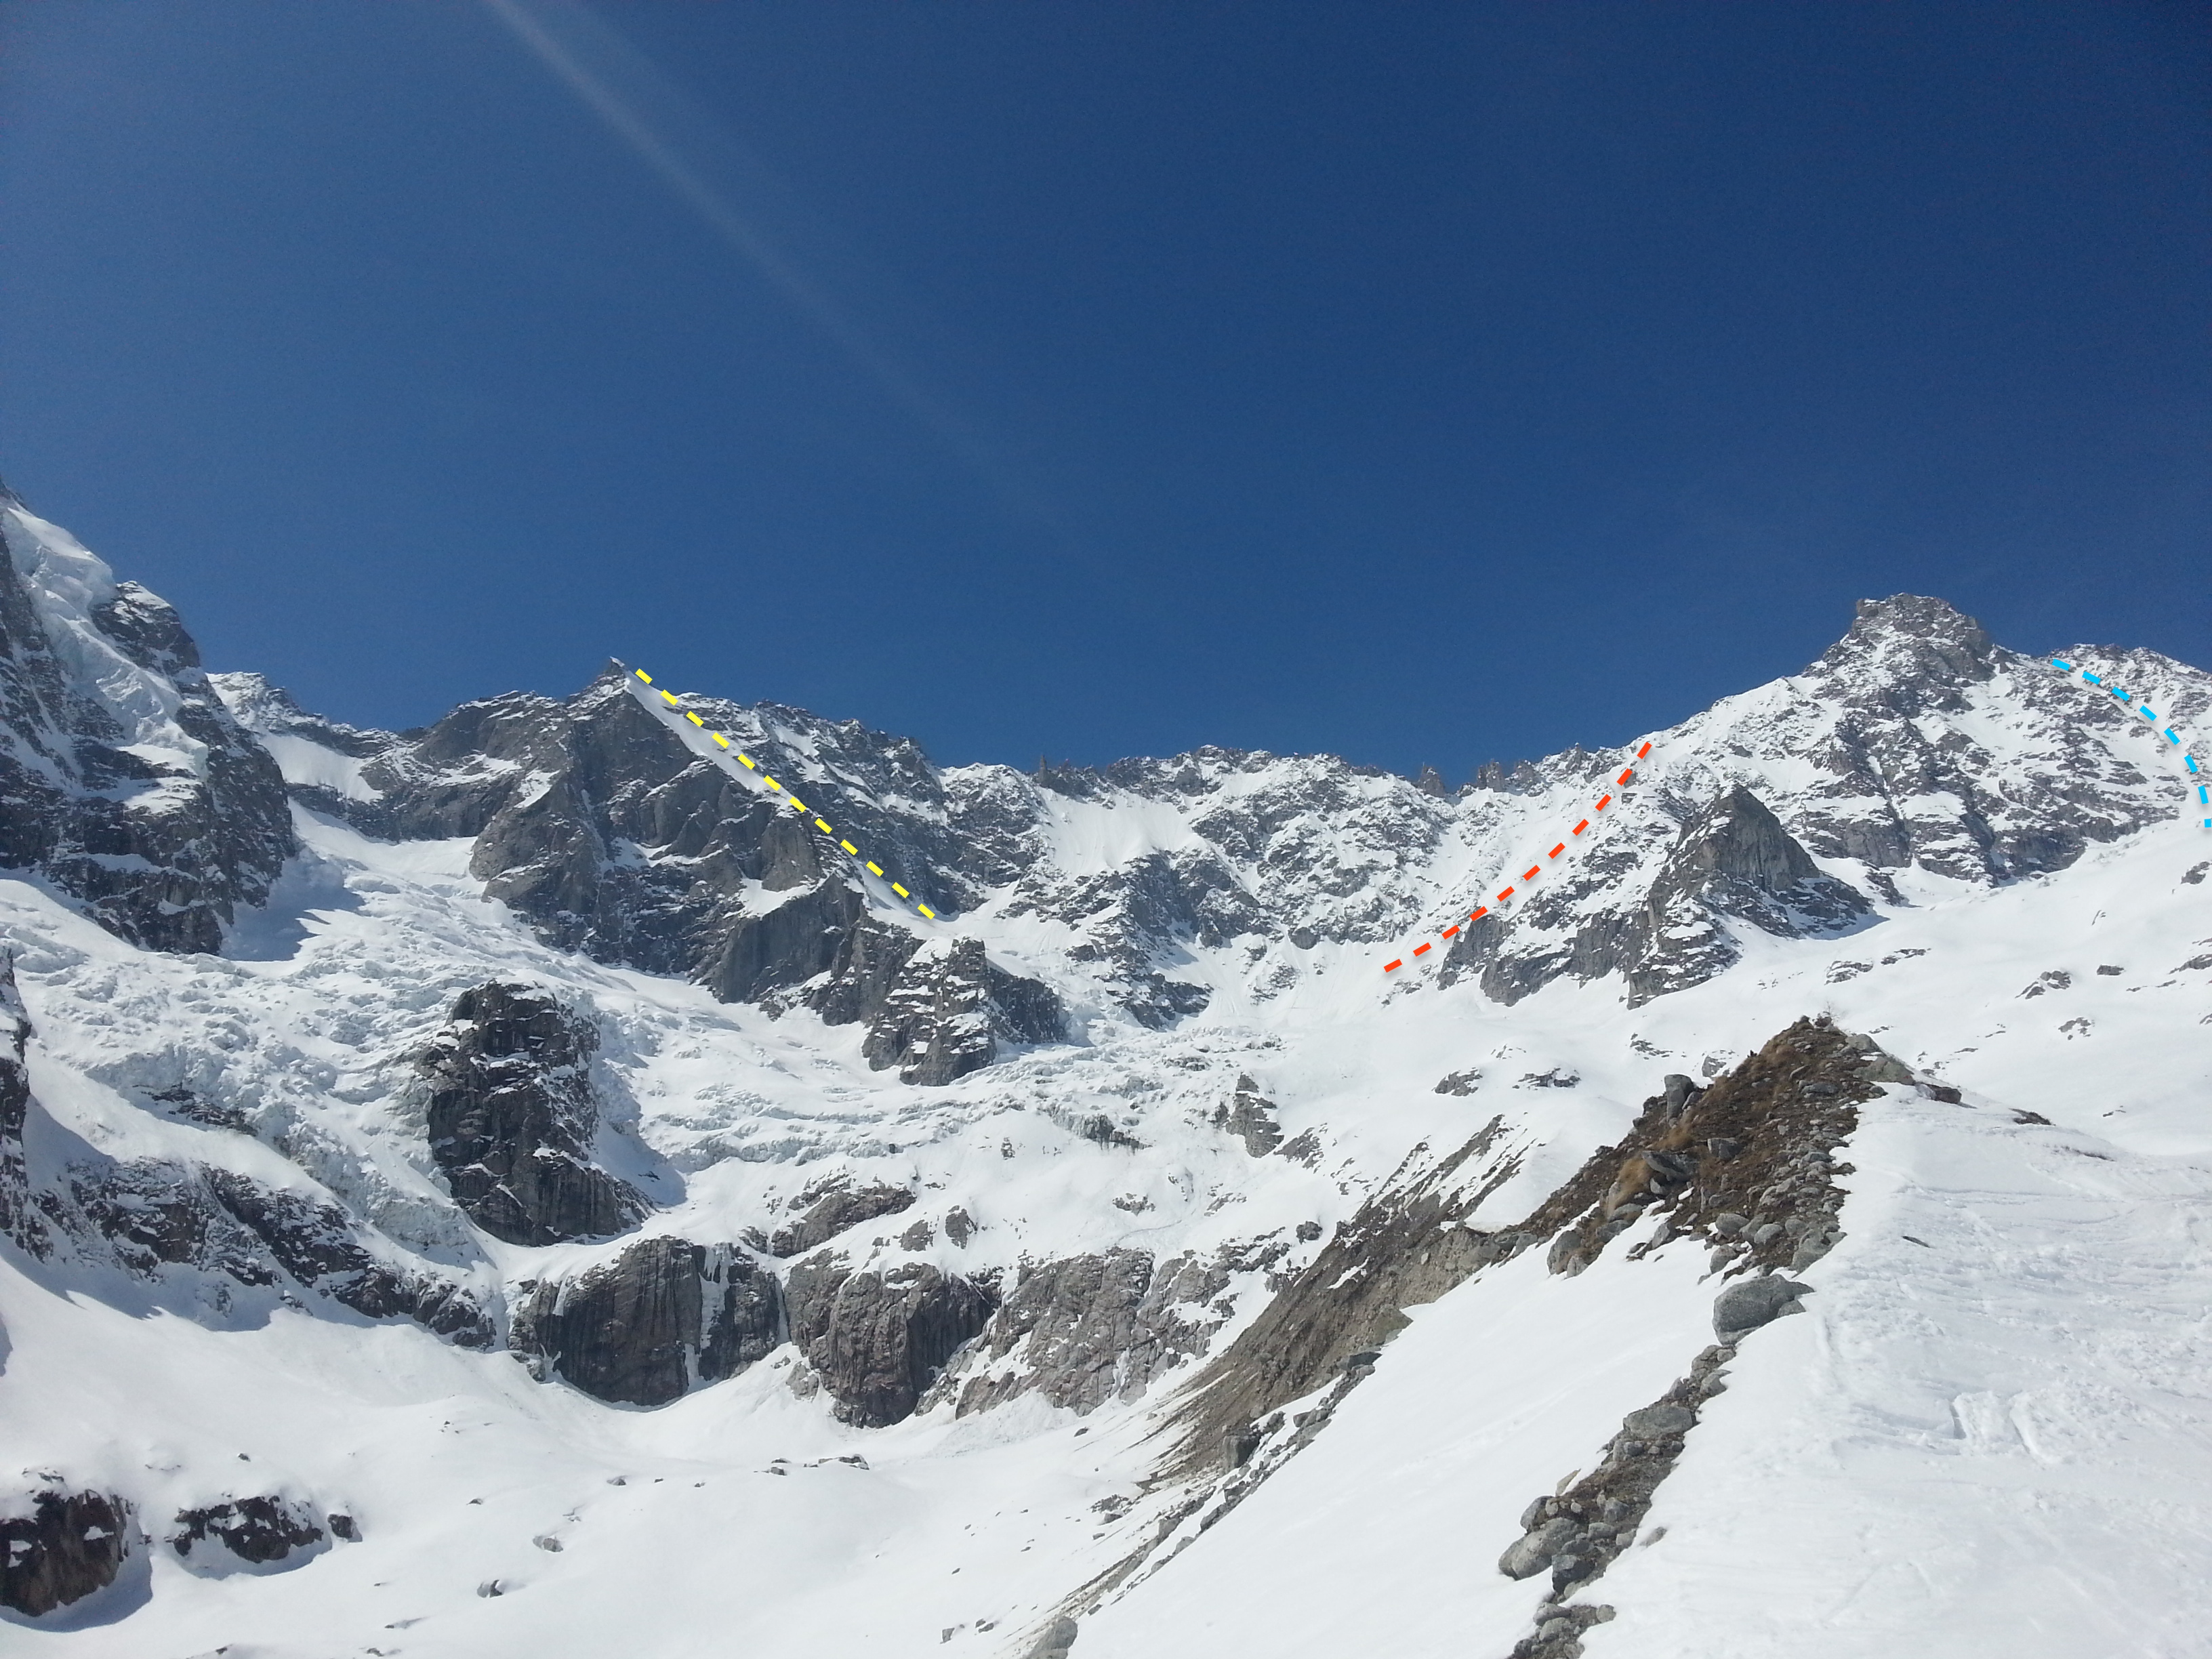 A neuve cirque ski descents topo Ross Hewitt